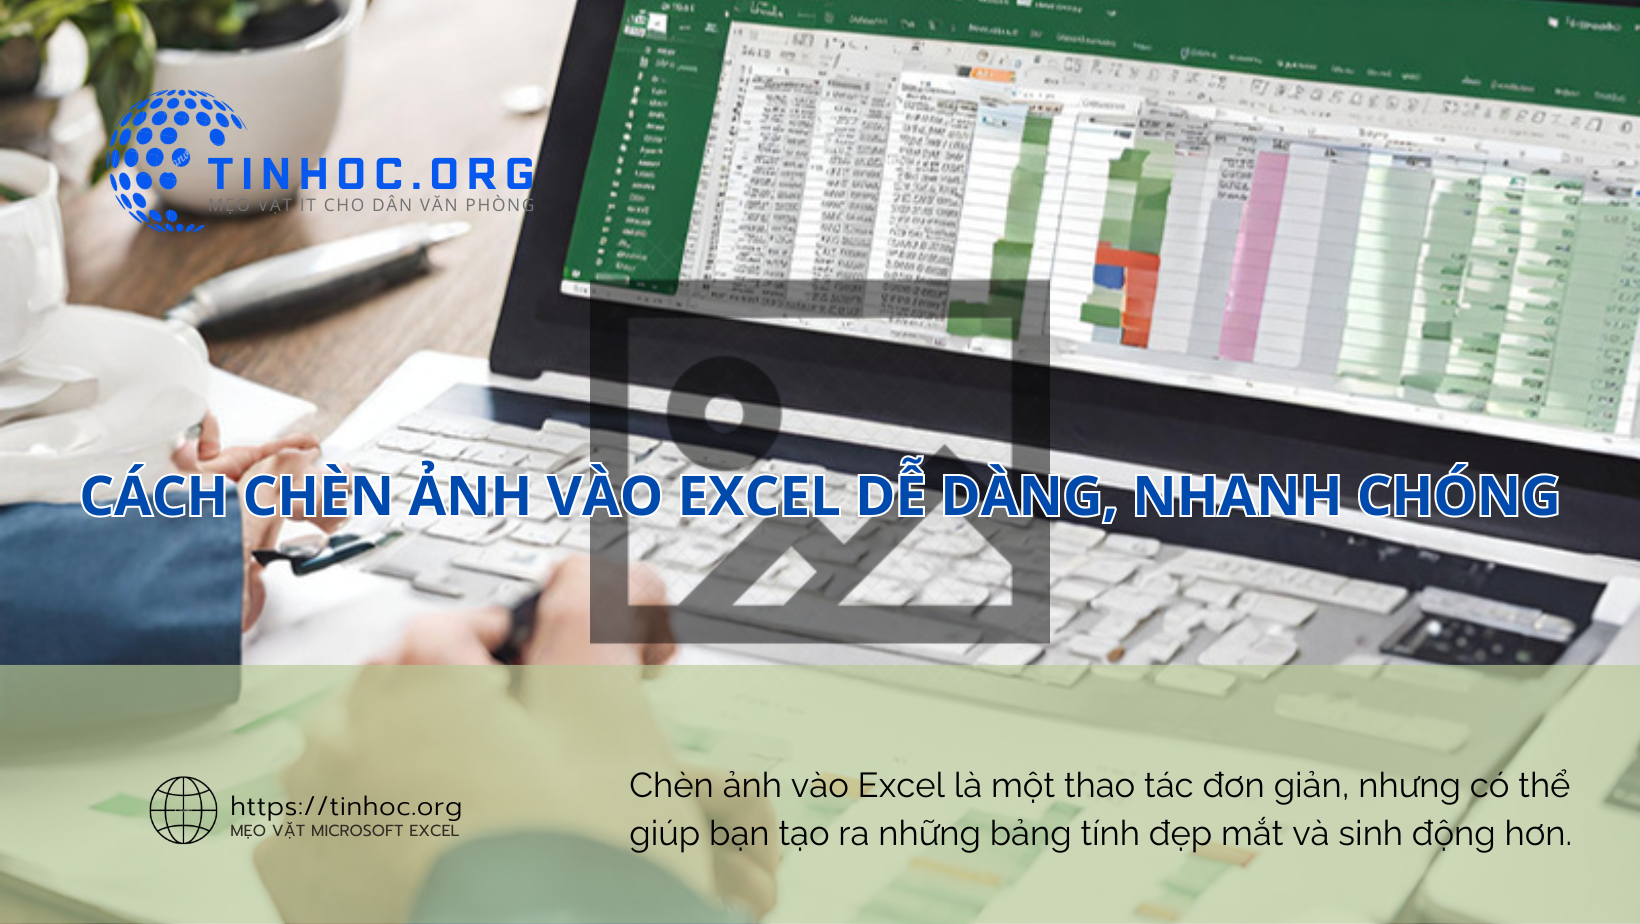 Chèn ảnh vào Excel là một thao tác đơn giản, nhưng có thể giúp bạn tạo ra những bảng tính đẹp mắt và sinh động hơn.